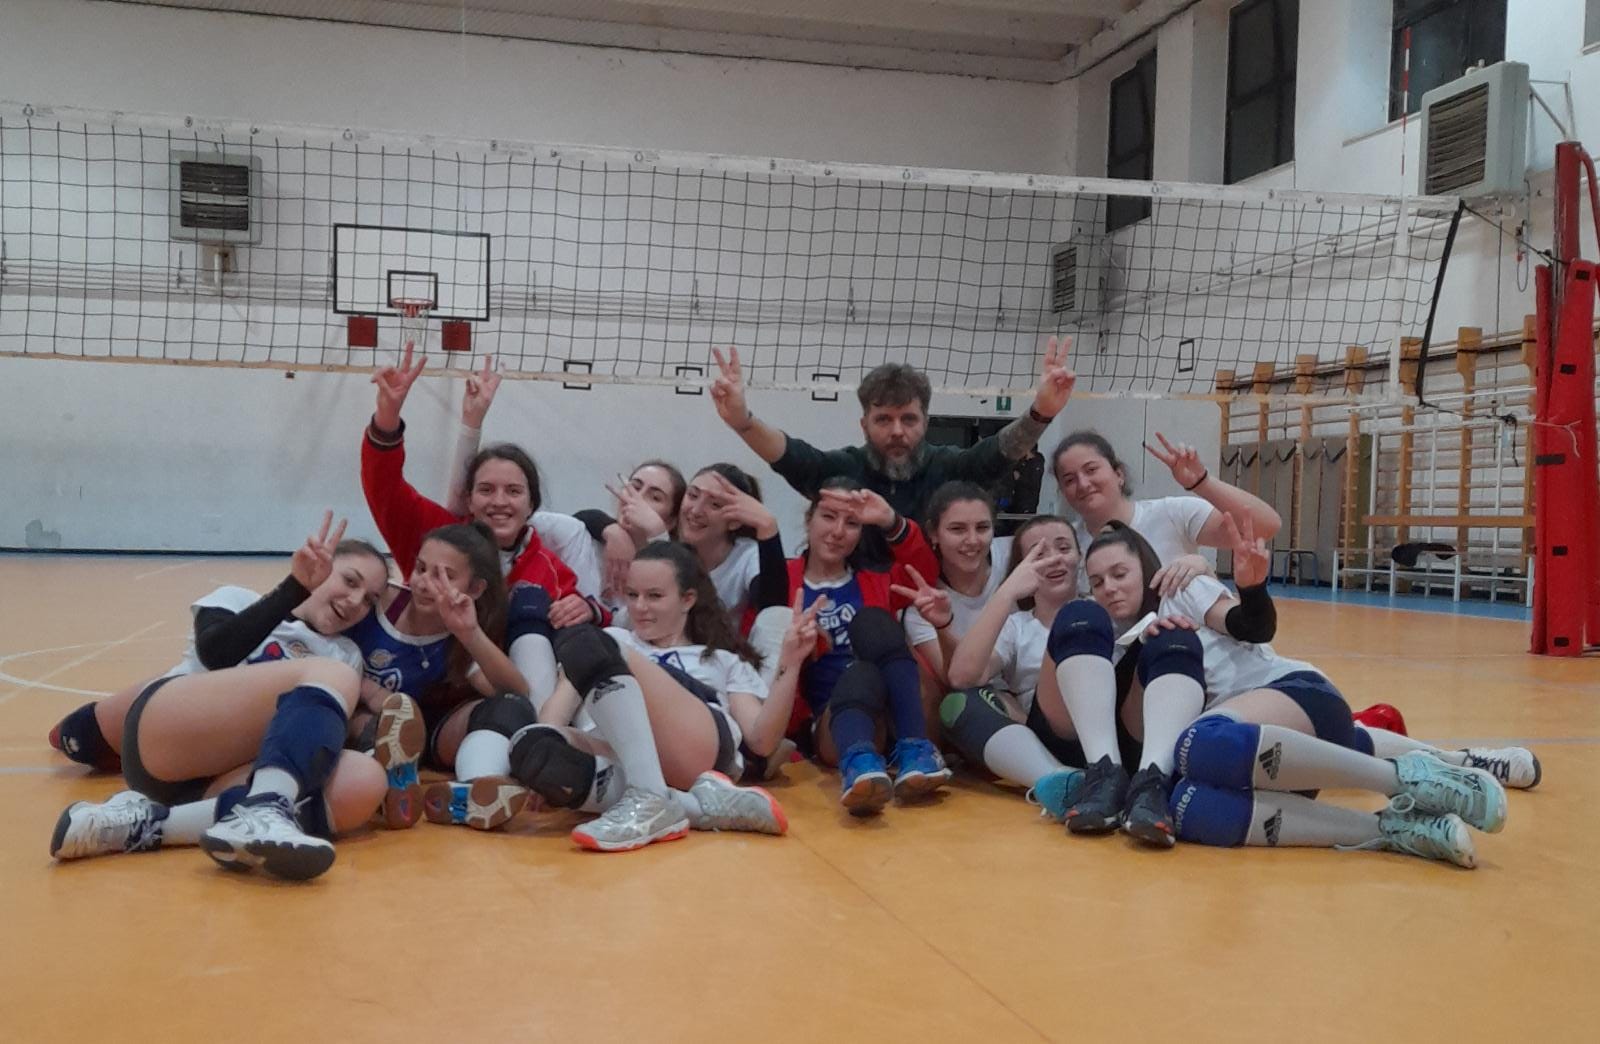 Città di Frascati | Volley, finita la corsa dell’Under 18 femminile. Camilli: “Annata comunque positiva”